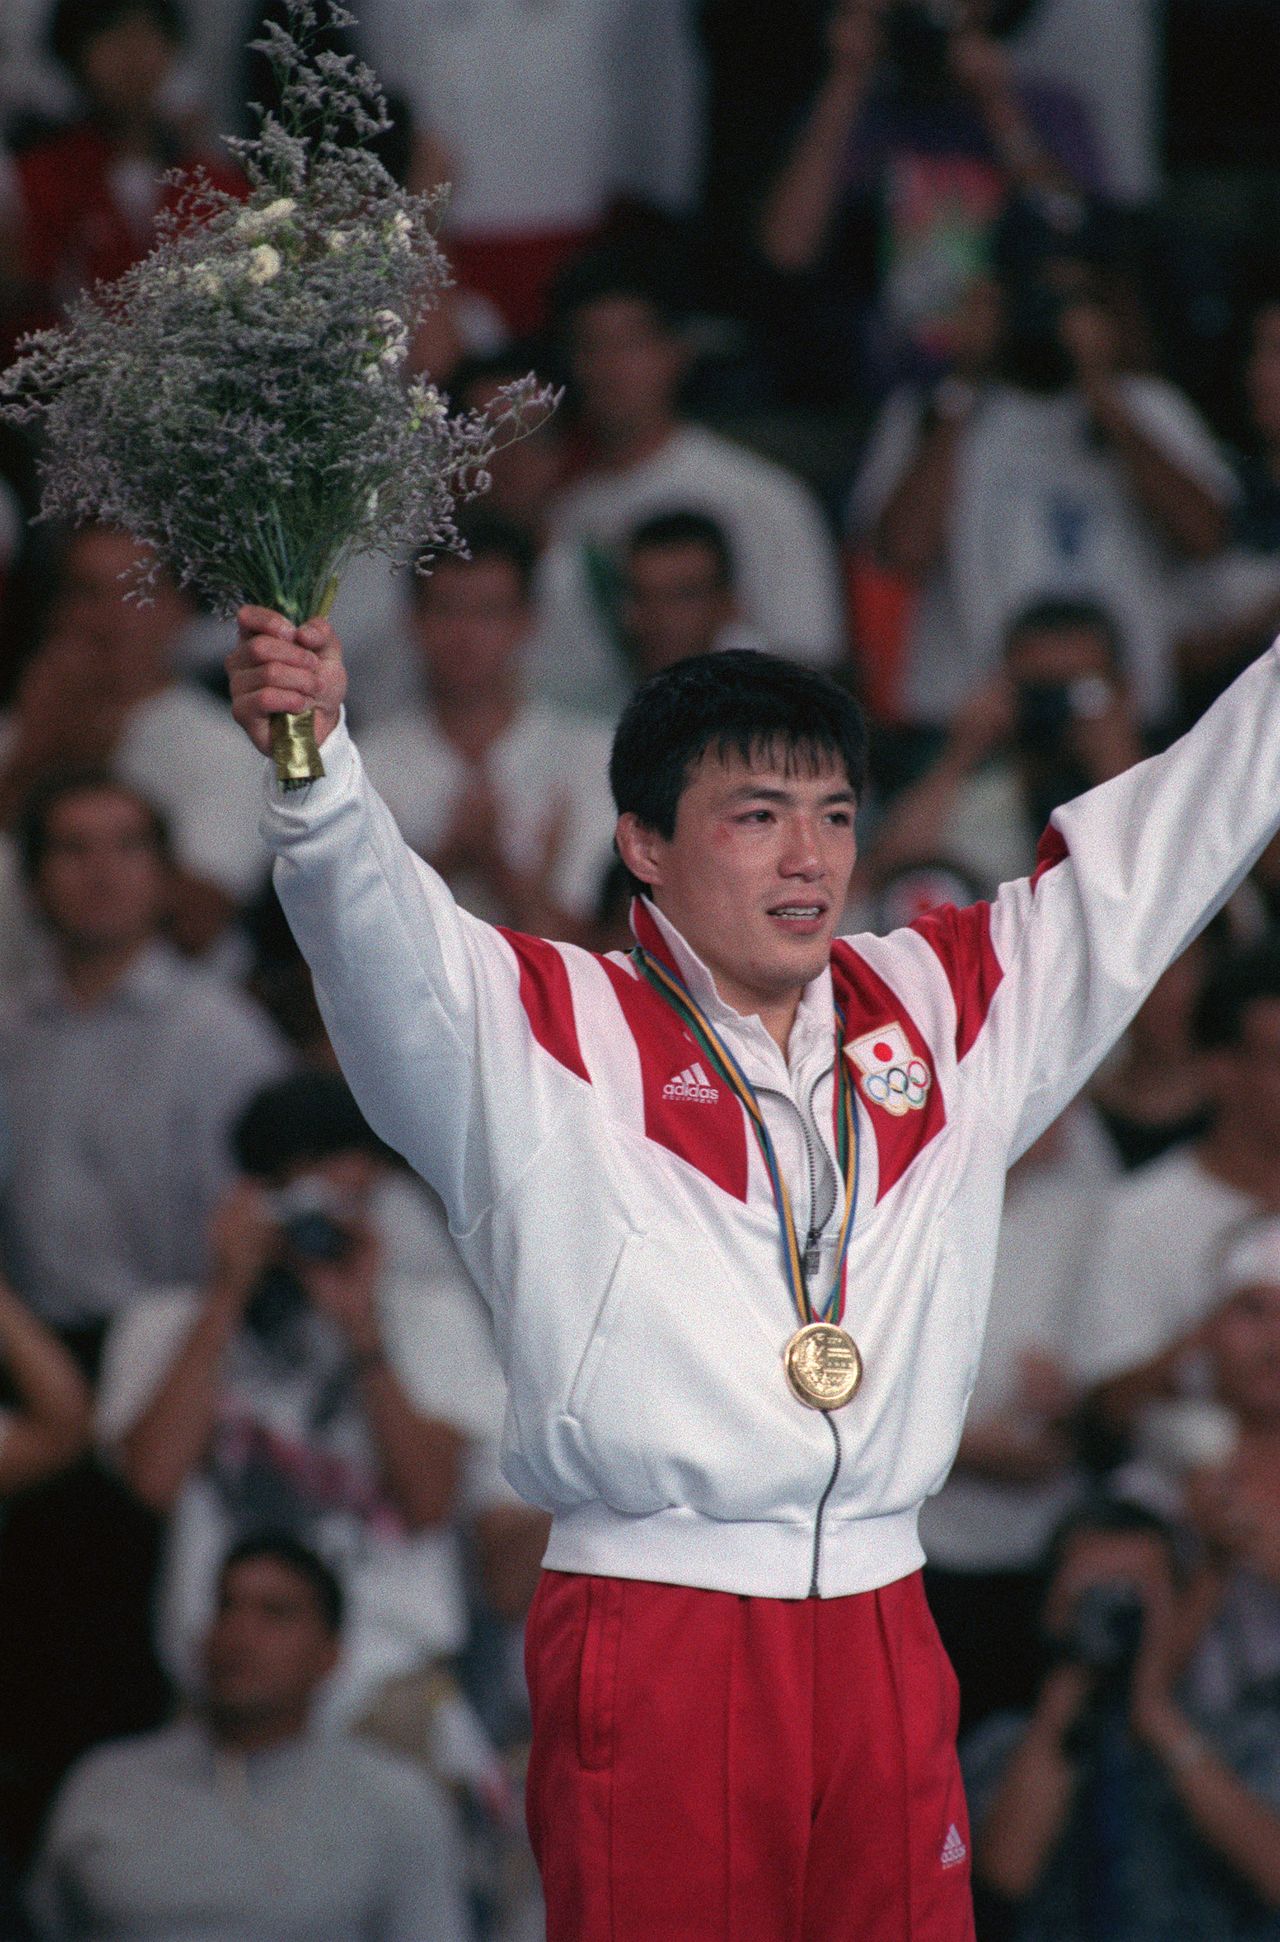 كوجا توشيهيكو على منصة التتويج في الحادي والثلاثين من يوليو/ تموز 1992، بعد فوزه بالميدالية الذهبية في مسابقة الجودو للرجال وزن 71 كيلوغراماً في أولمبياد برشلونة. (جيجي برس)